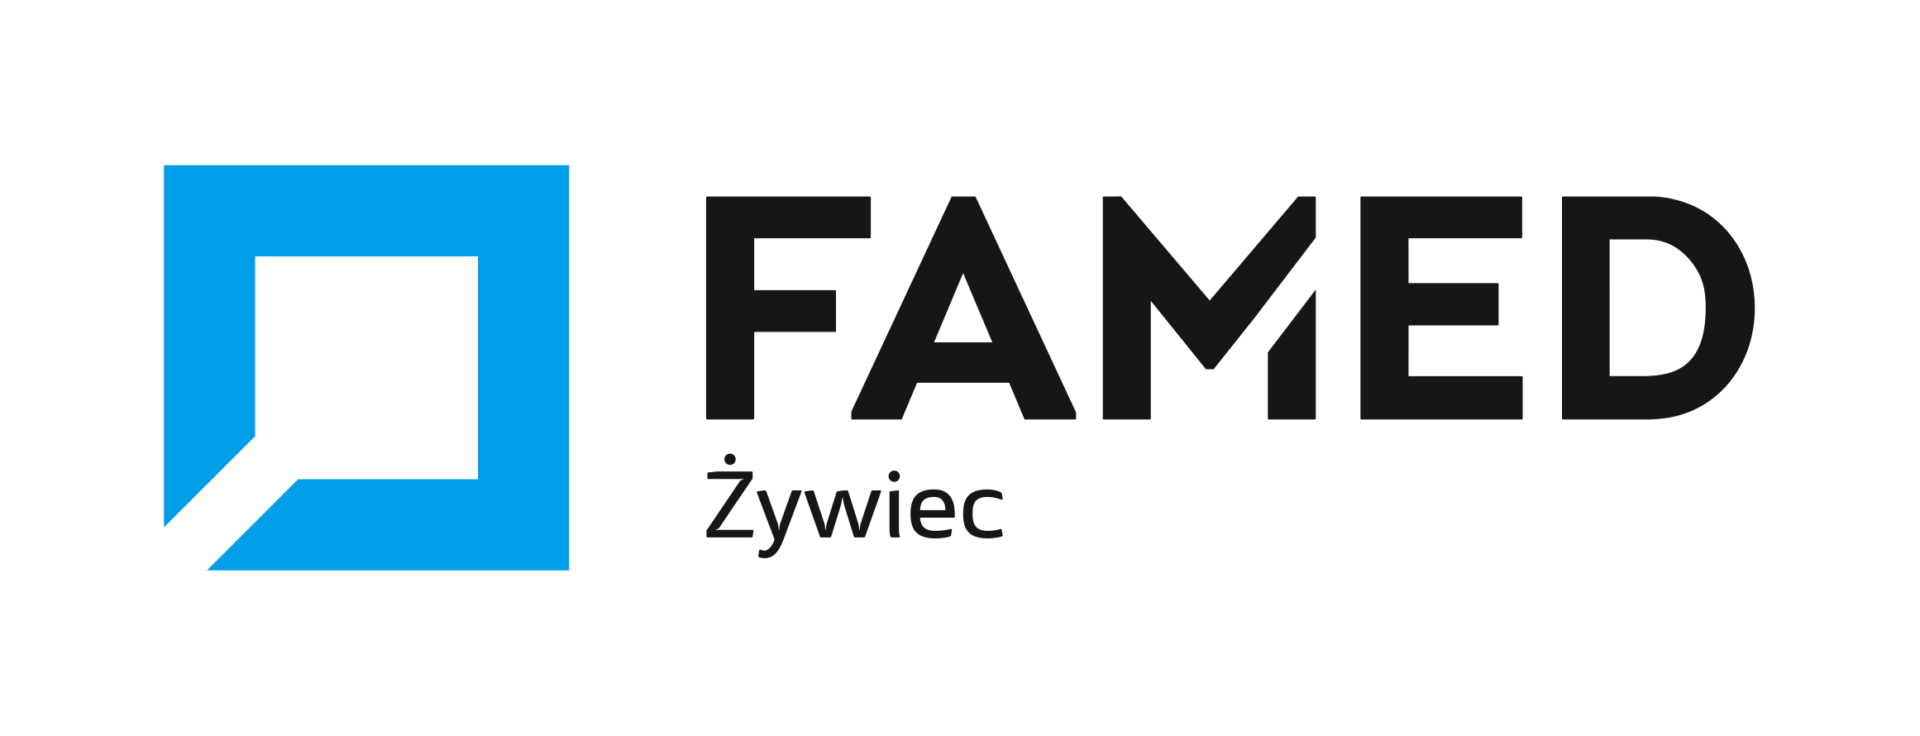 FAMED_logo_tagline_ZYWIEC_CMYK-1